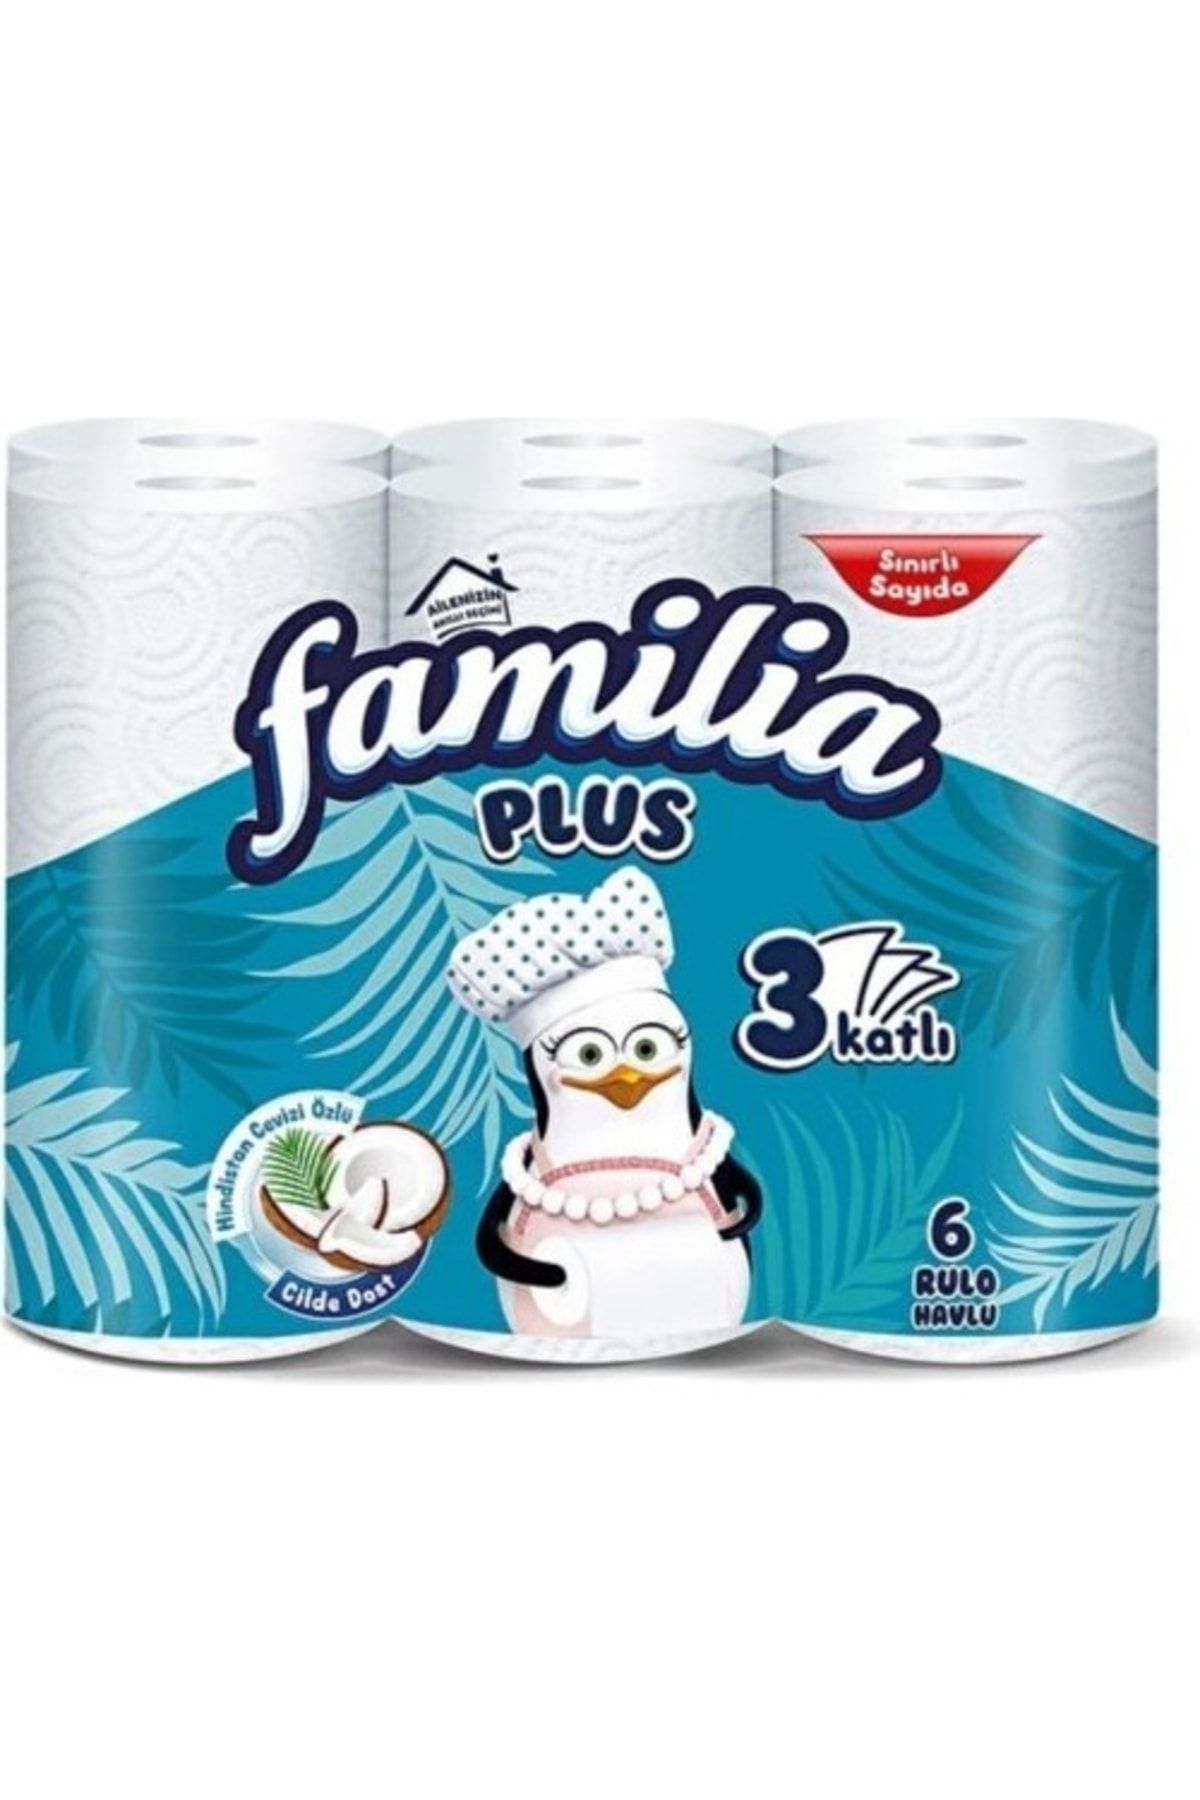 Familia Plus Coconut Özlü Kağıt Havlu 3 Katlı 6'lı